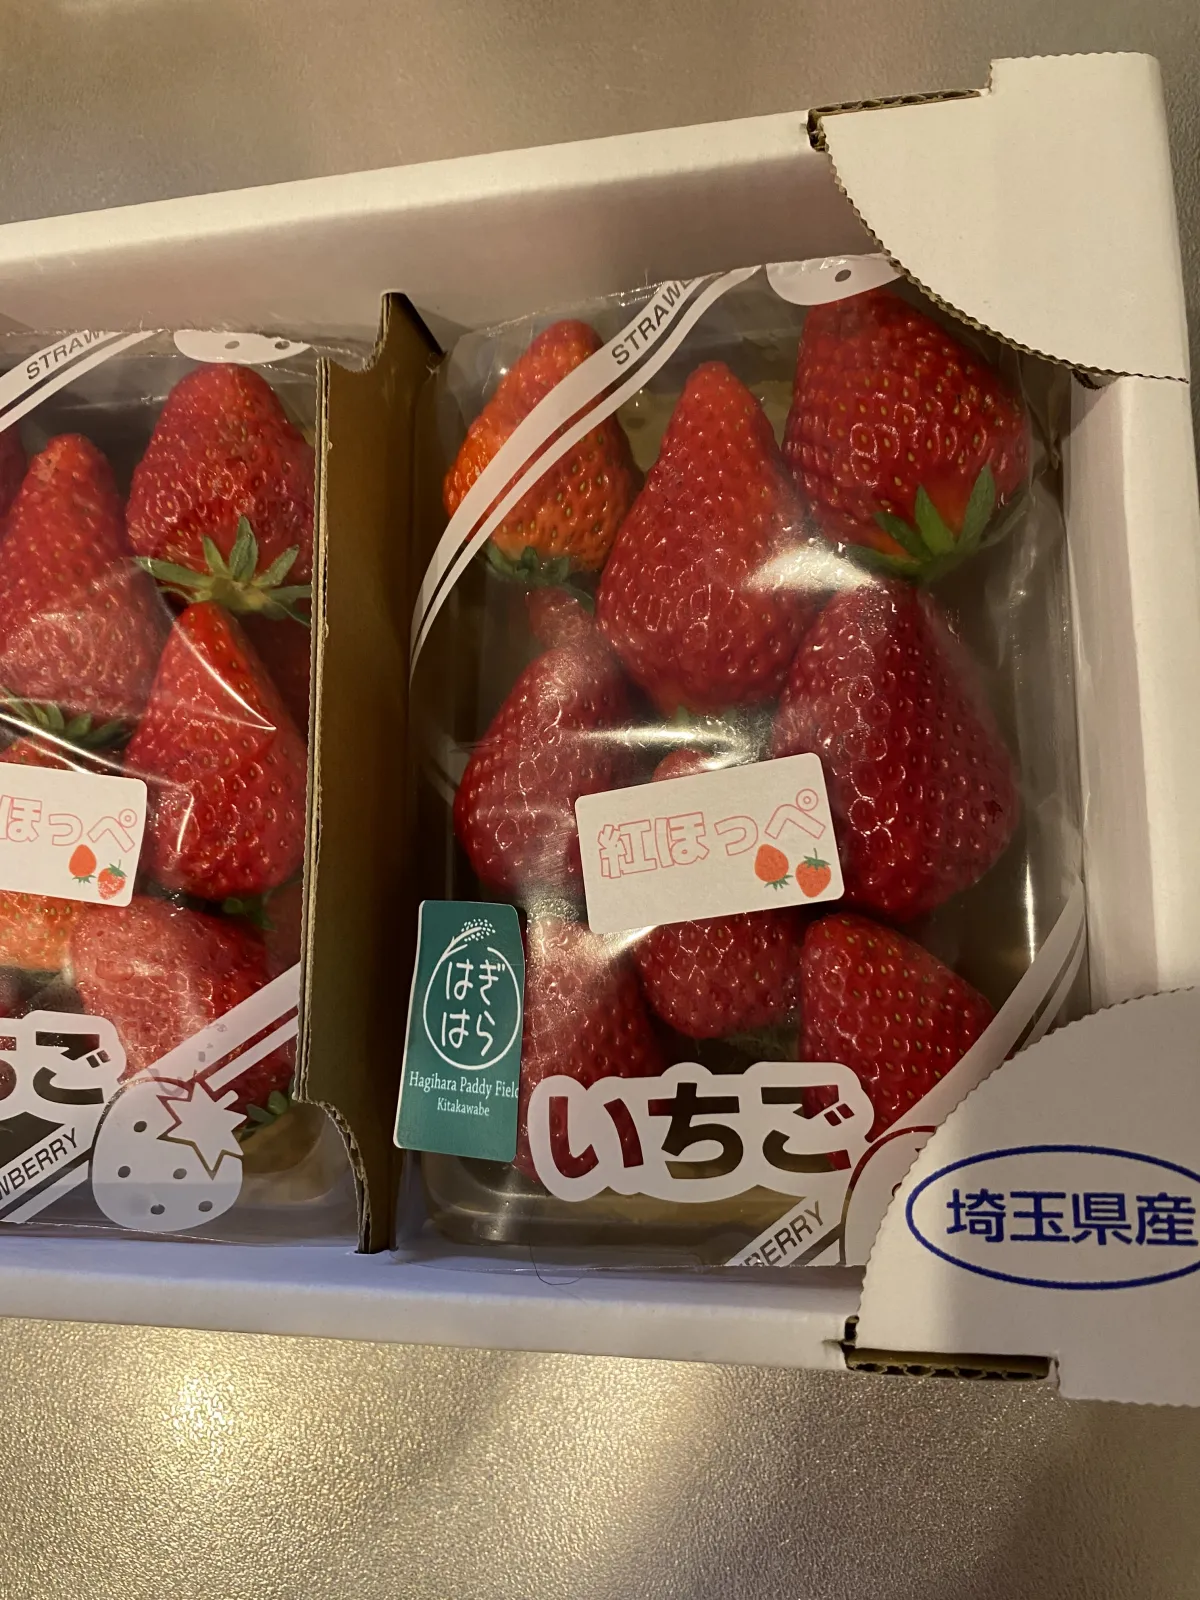 私は売店で埼玉県産のイチゴを買ってみました〜🍓

イチゴといえば栃木？福岡？

埼玉のイチゴも美味しいですよ〜😙

それではまた！